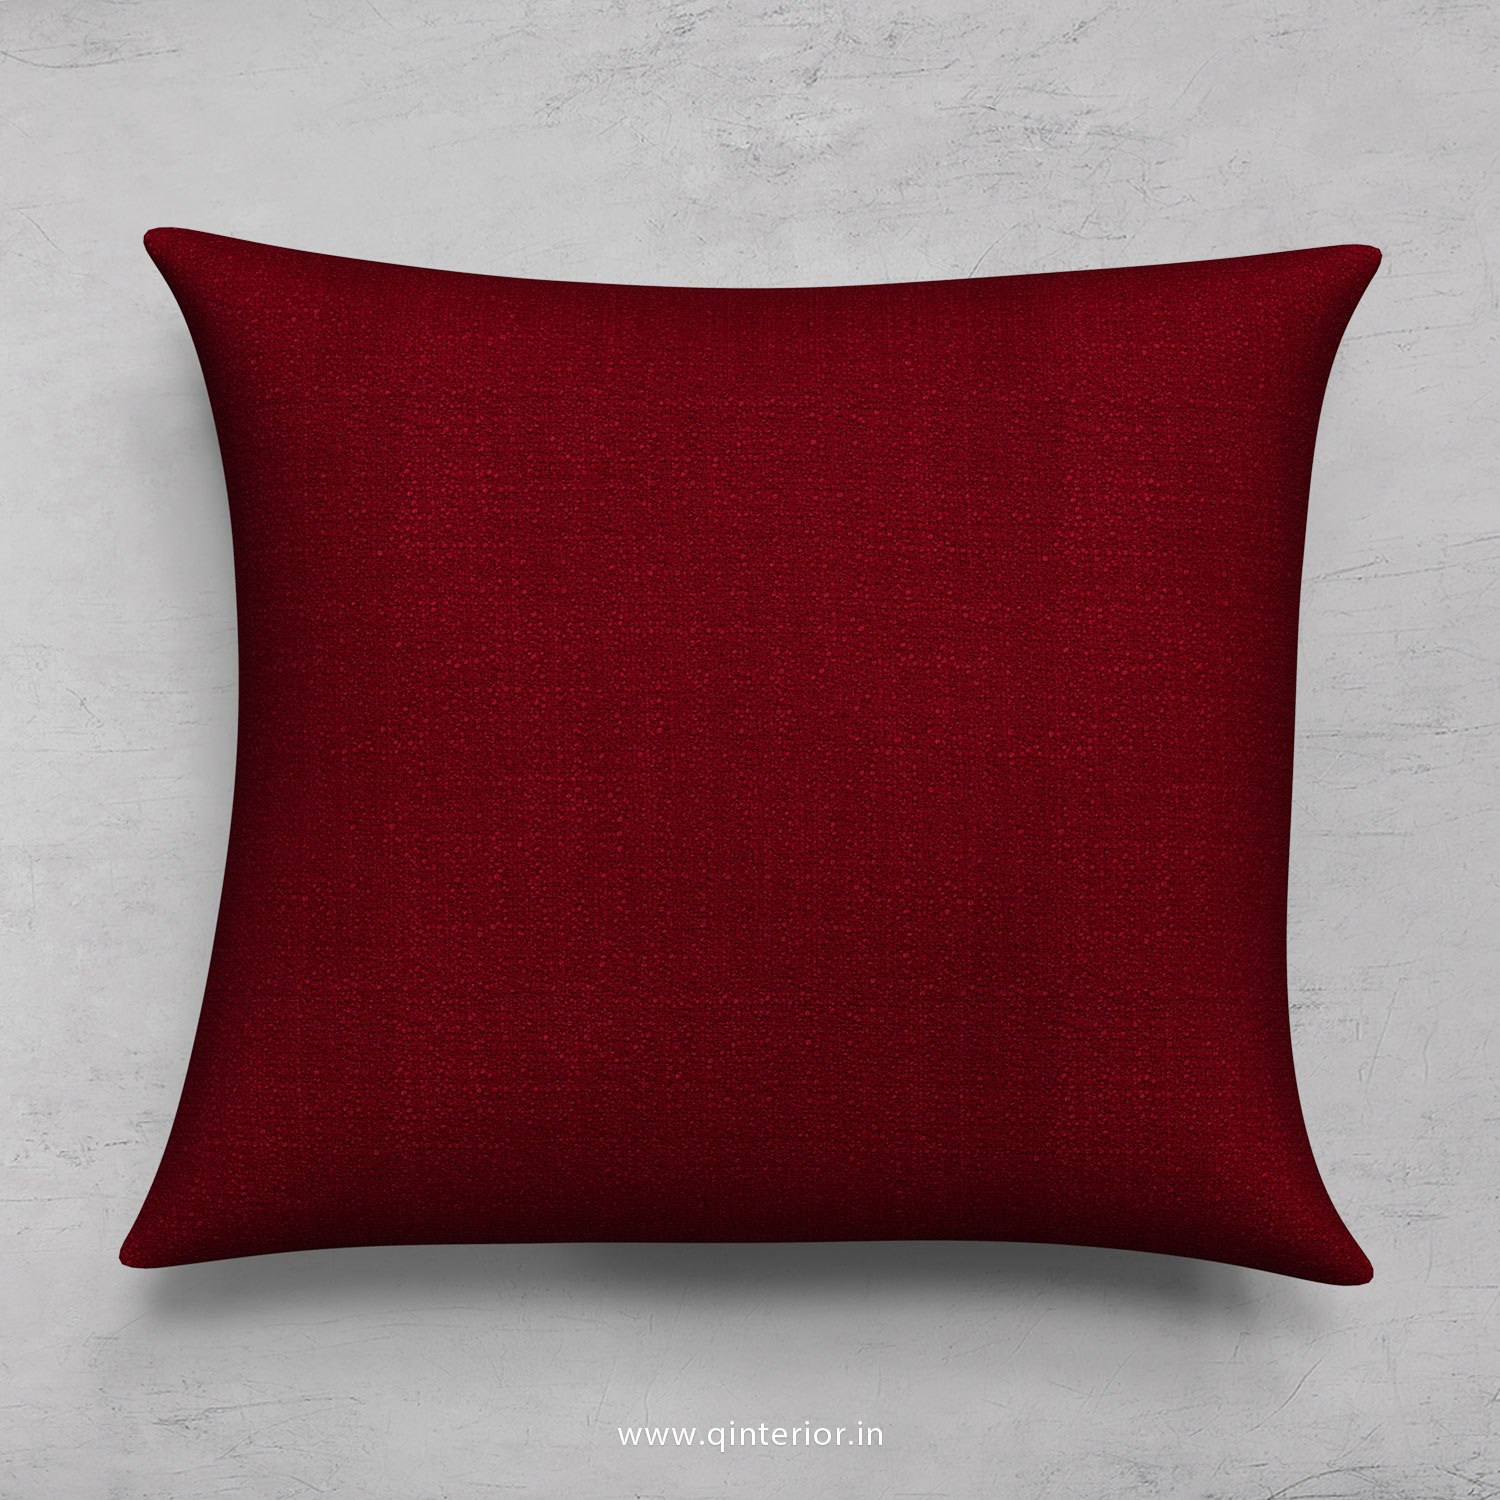 Cushion With Cushion Cover in Bargello- CUS001 BG08